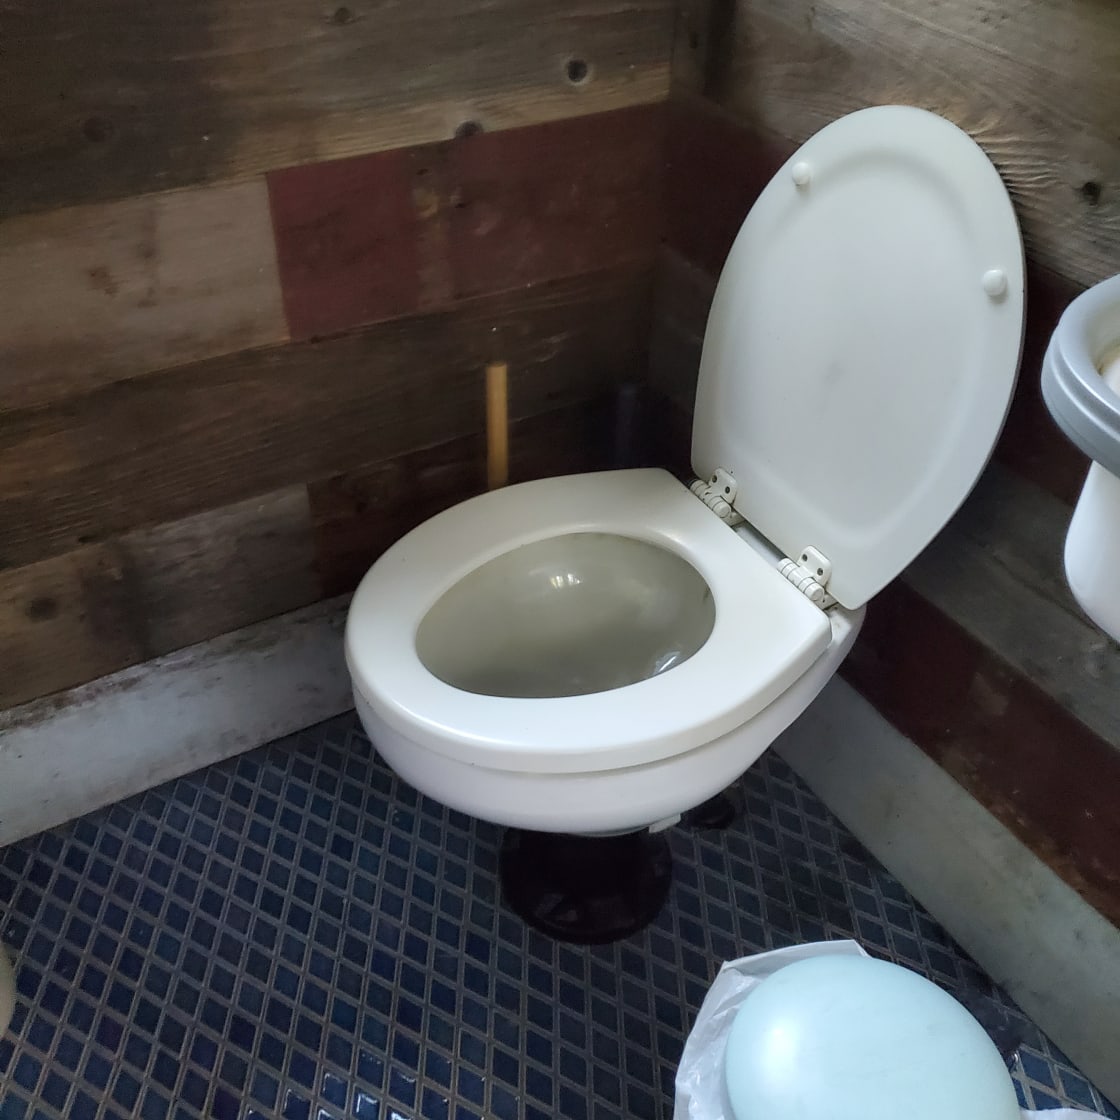 Nice clean toilet